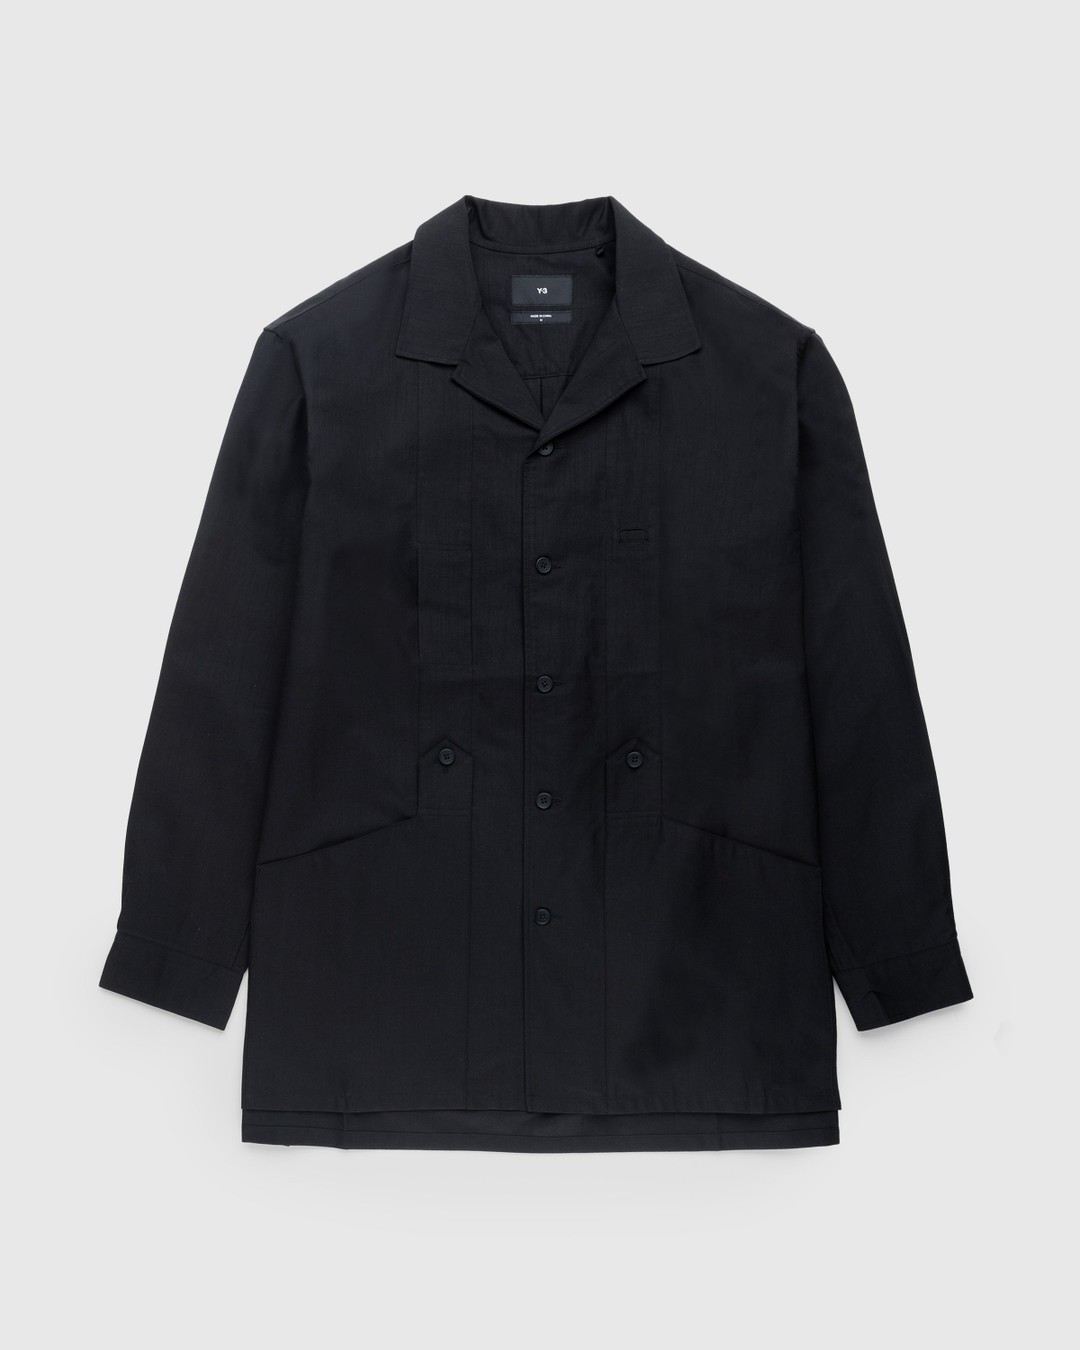 Y-3 – Longsleeve Workwear Shirt Black | Highsnobiety Shop